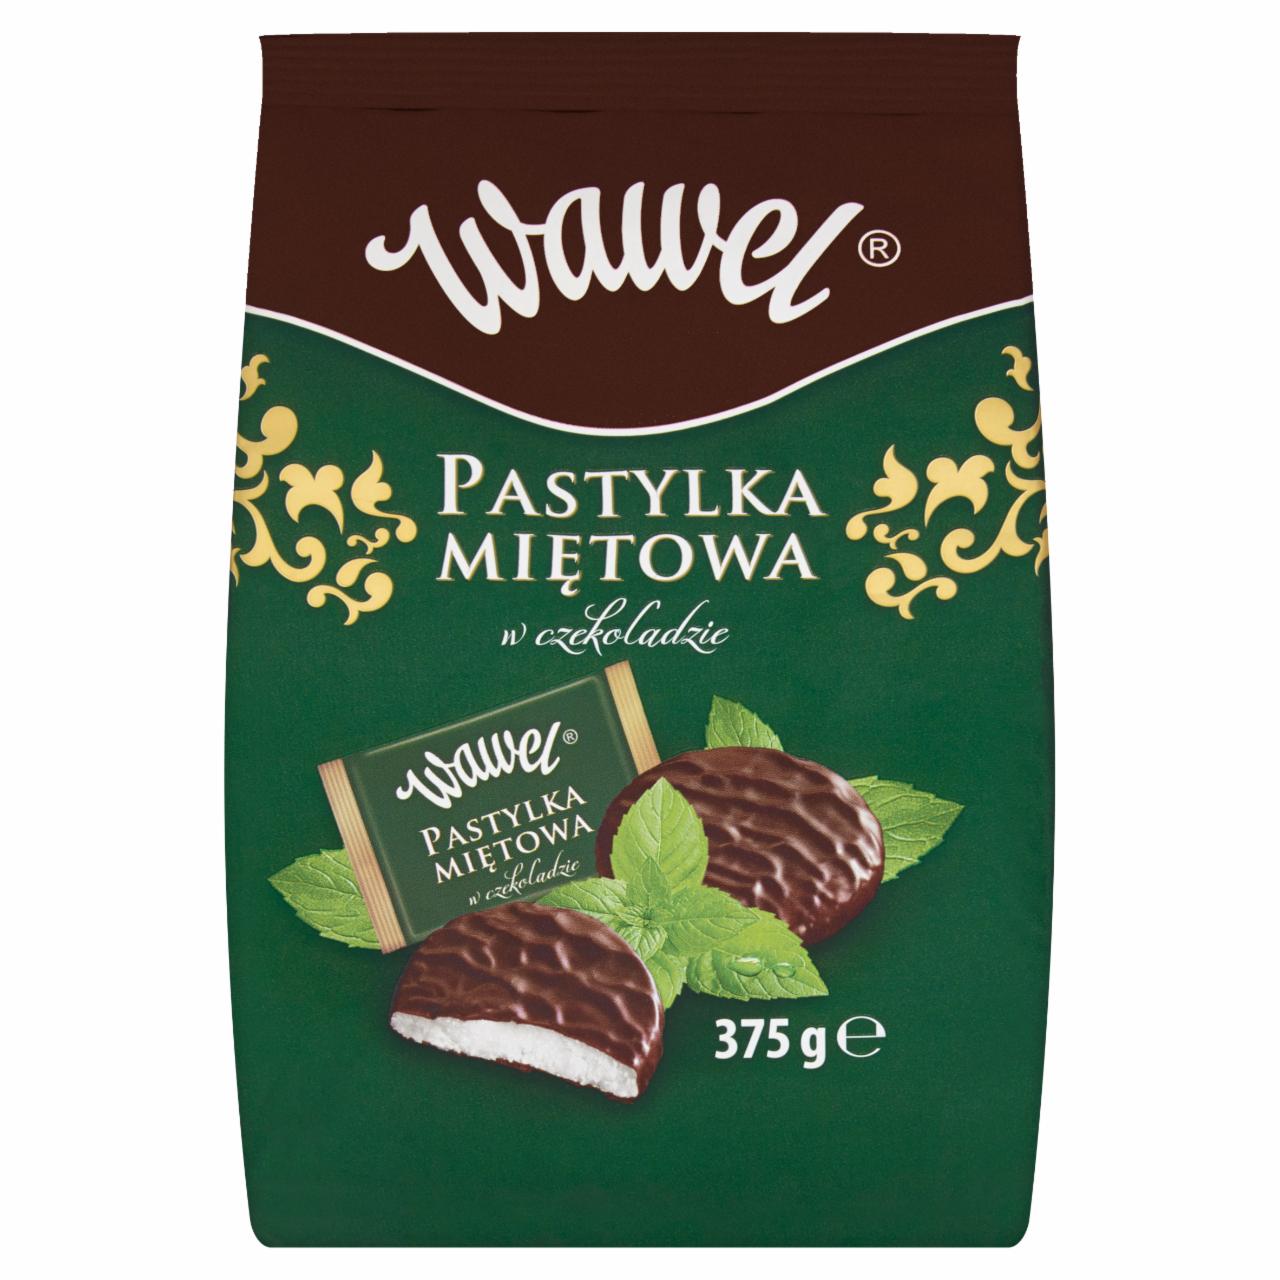 Zdjęcia - Wawel Pastylka miętowa w czekoladzie 375 g